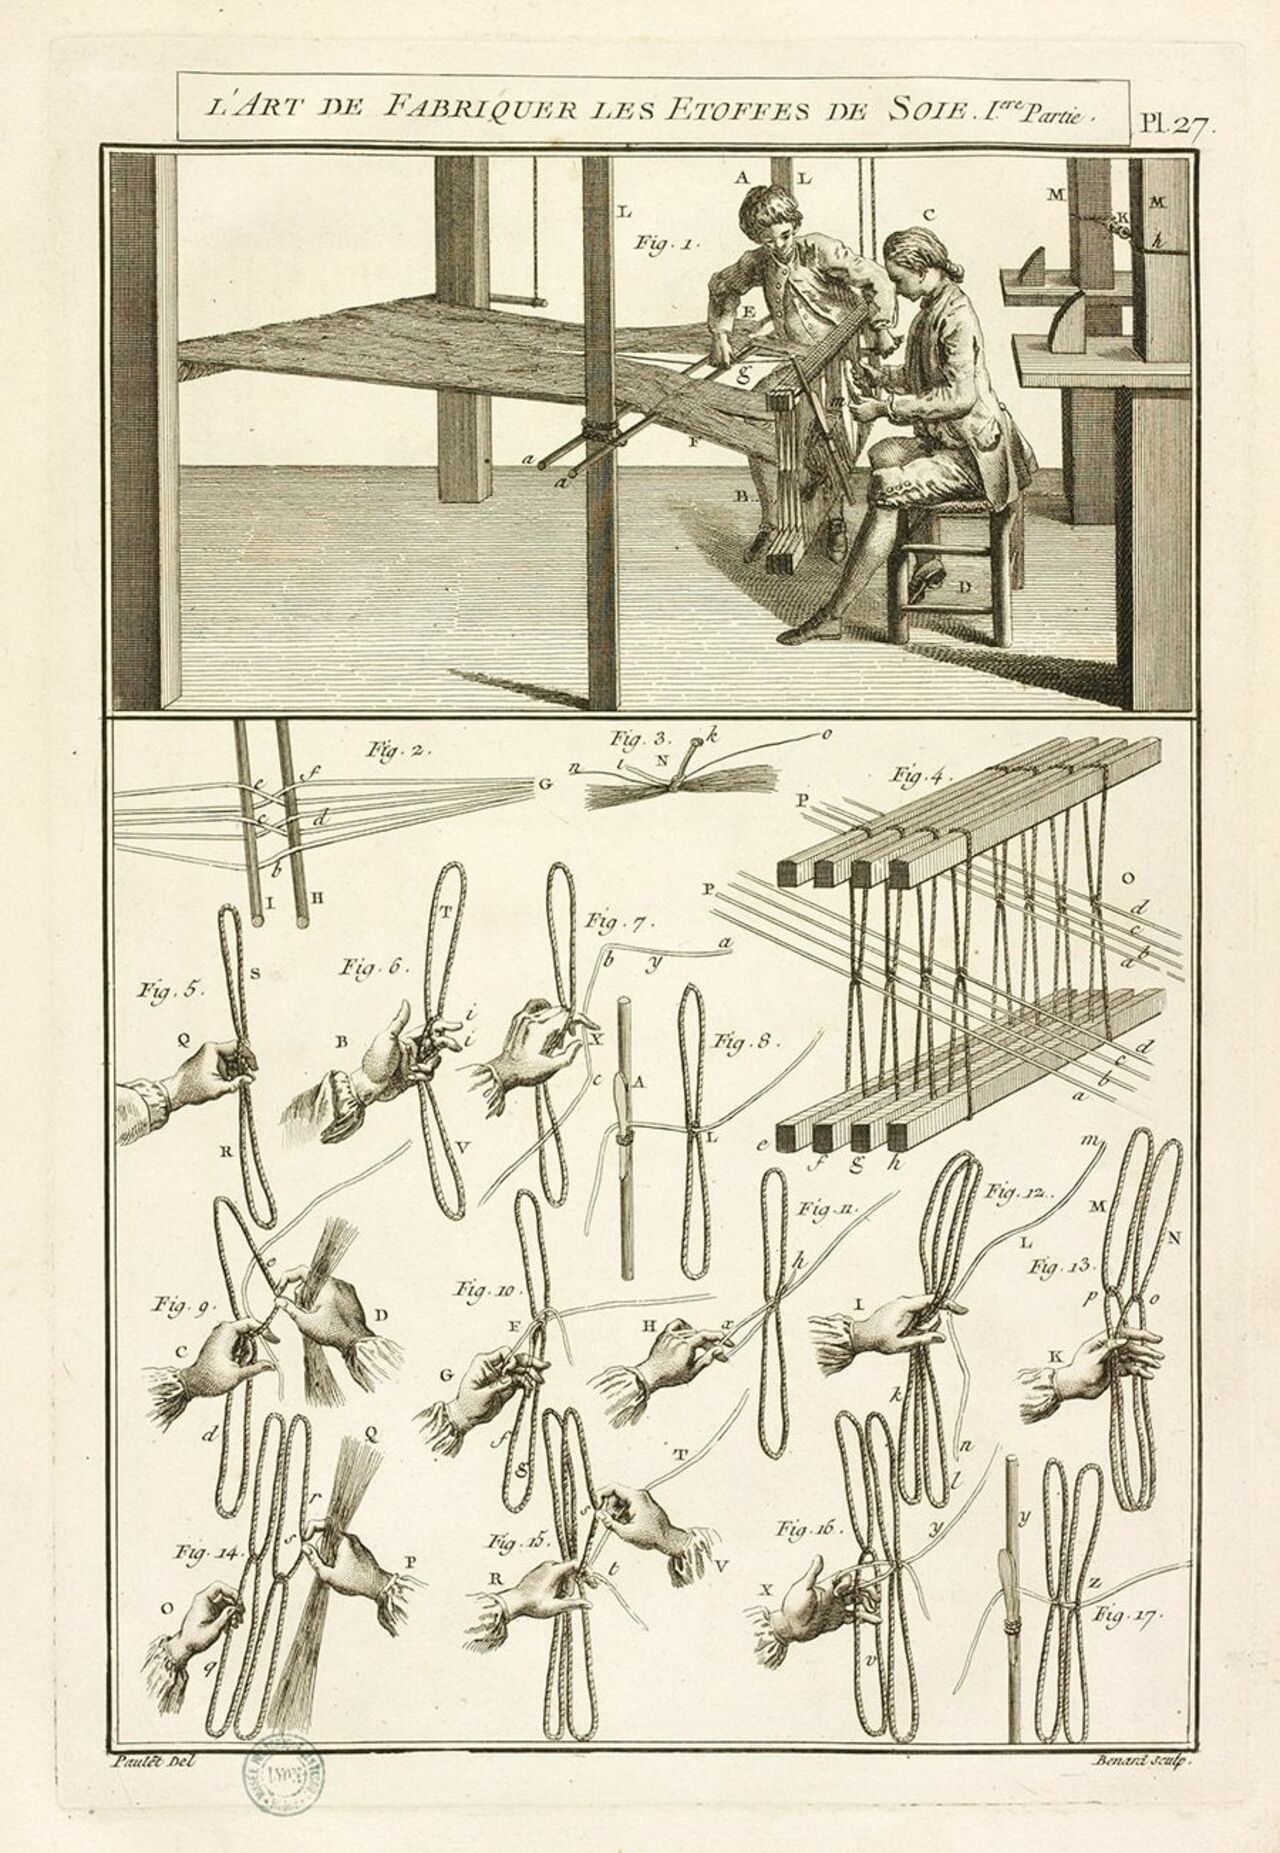 Jean Paulet, L.-F. Delatour, *L’art de fabriquer des étoffes de soies, I^ere partie*, Paris, 1776.